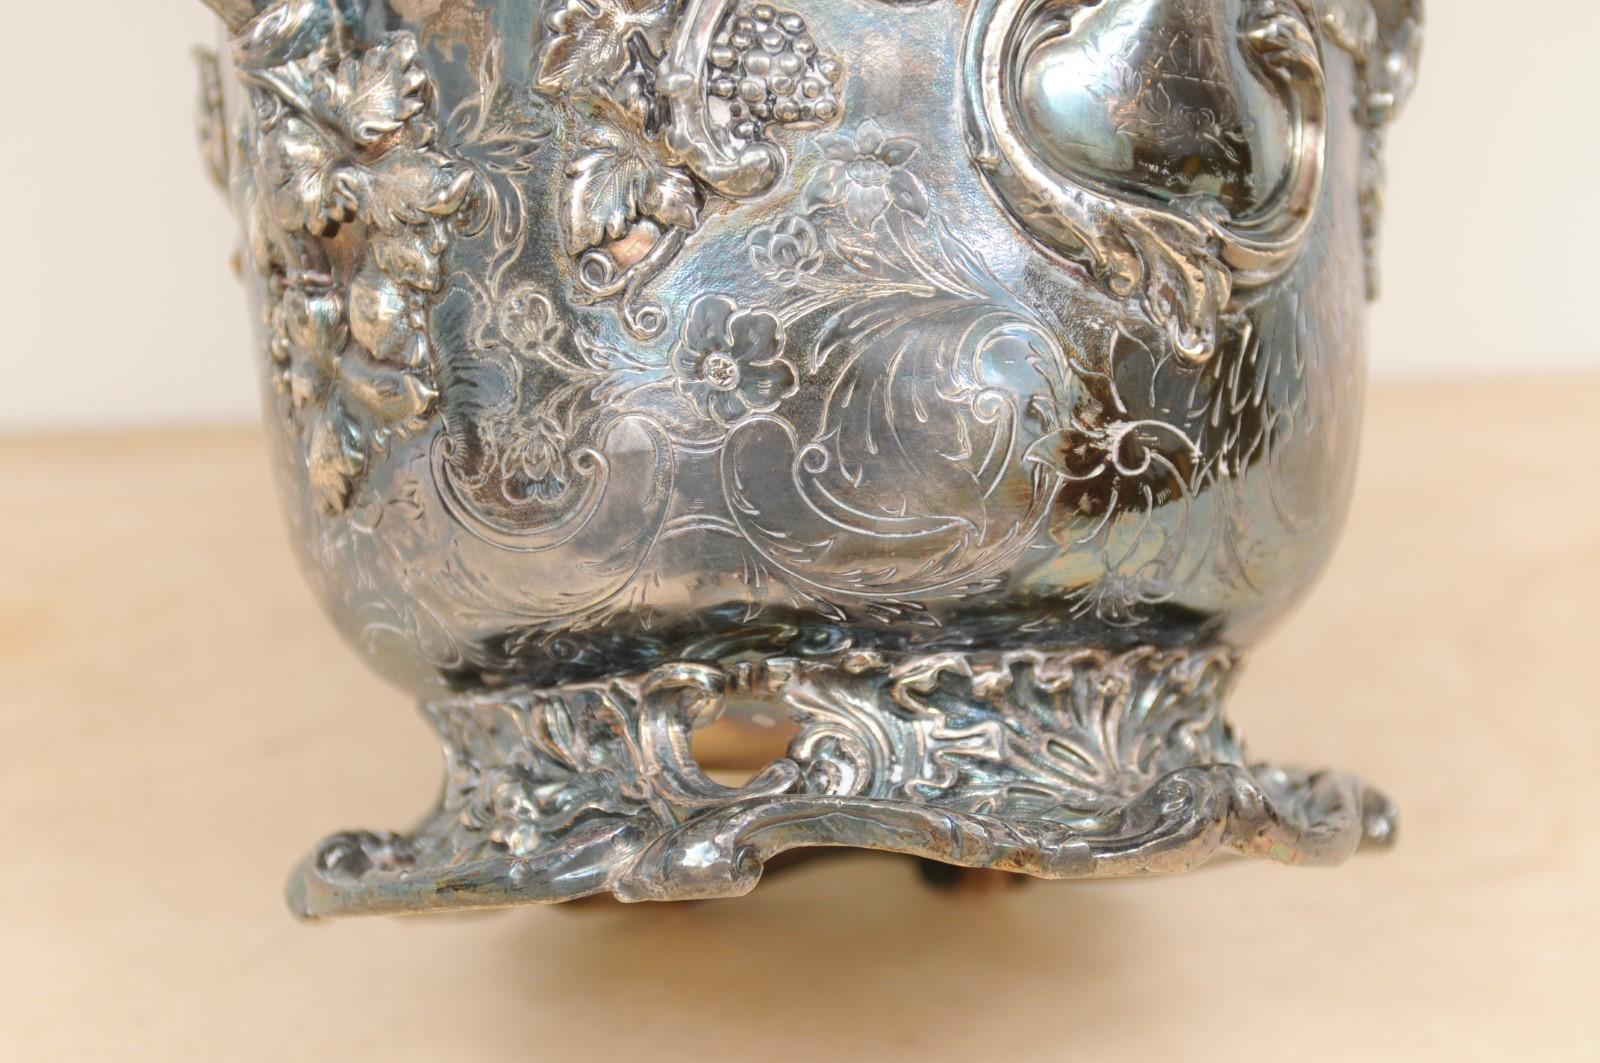 Ein englischer Sektkübel aus Sheffield-Silber auf Kupfer aus dem frühen 19. Jahrhundert mit Traubenmotiven. Dieser Champagnerkübel wurde während der Herrschaft von König Georg III. in England hergestellt. Sein Korpus aus Sheffield-Silber auf Kupfer